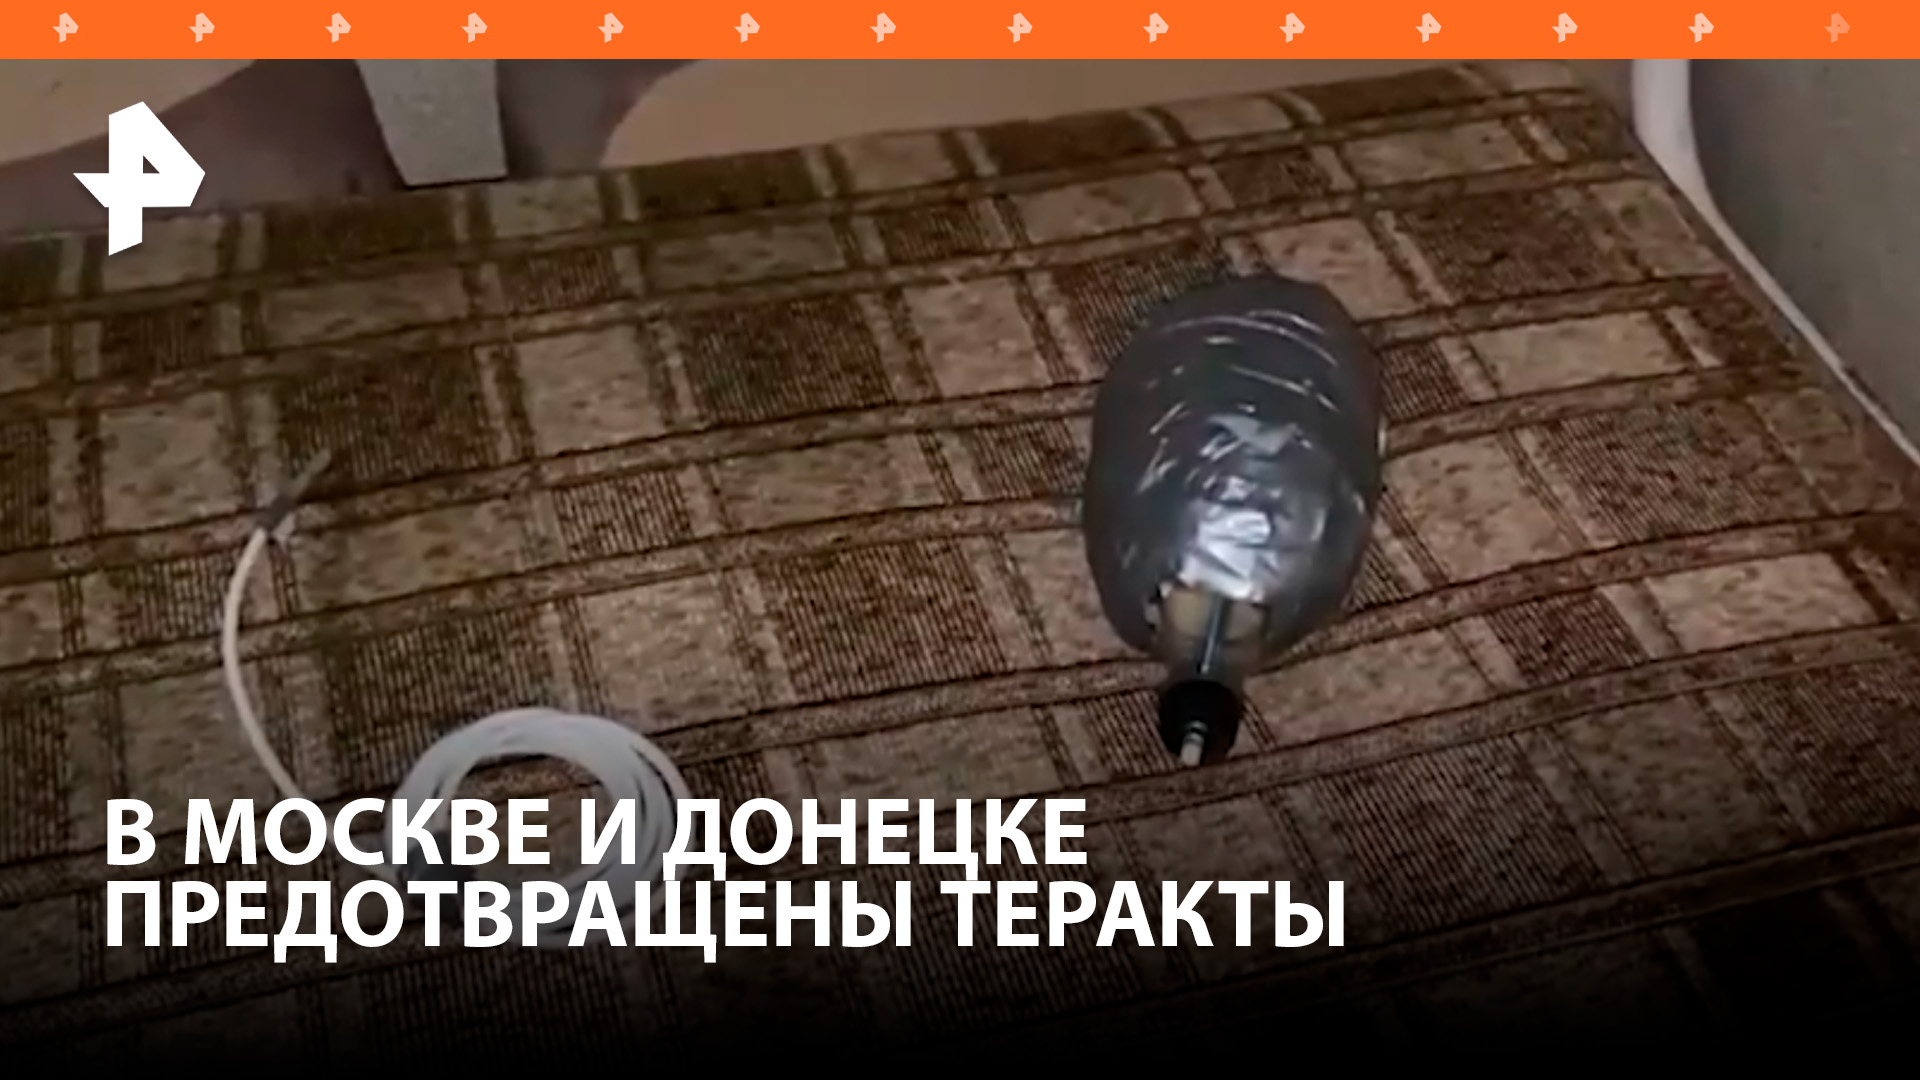 ФСБ предотвратила крупные теракты в Москве и Донецке / РЕН Новости